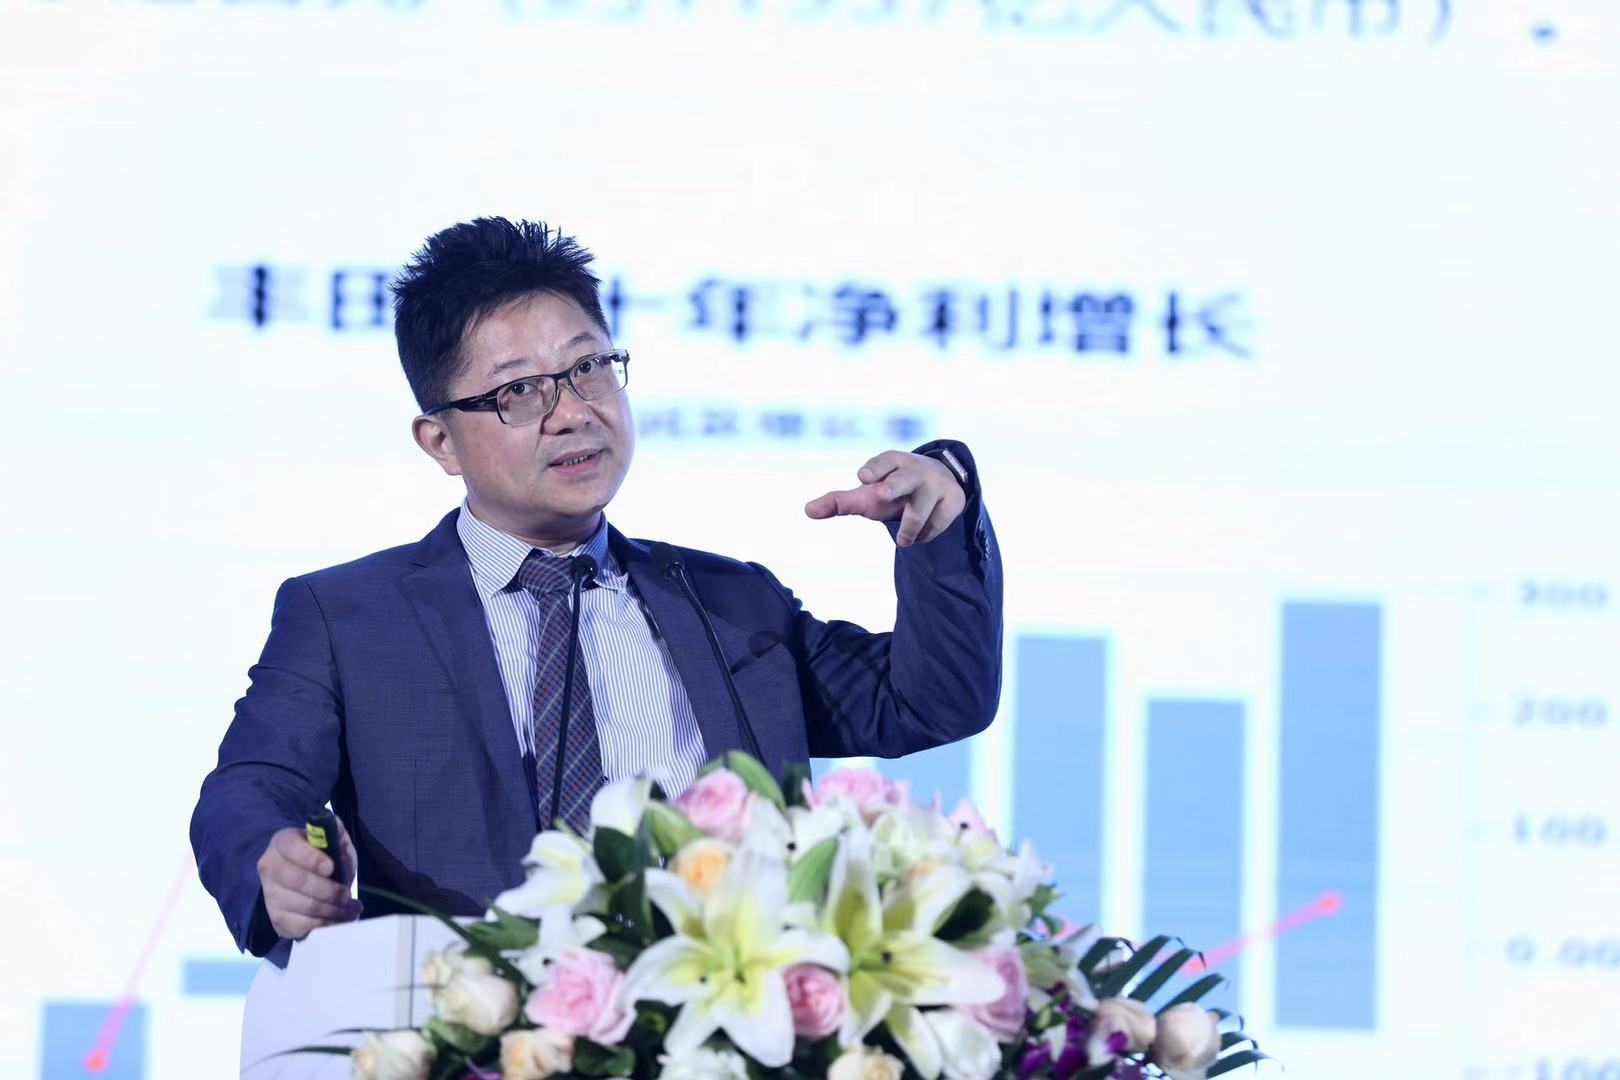 基石资产管理股份有限公司董事长张维发表演讲